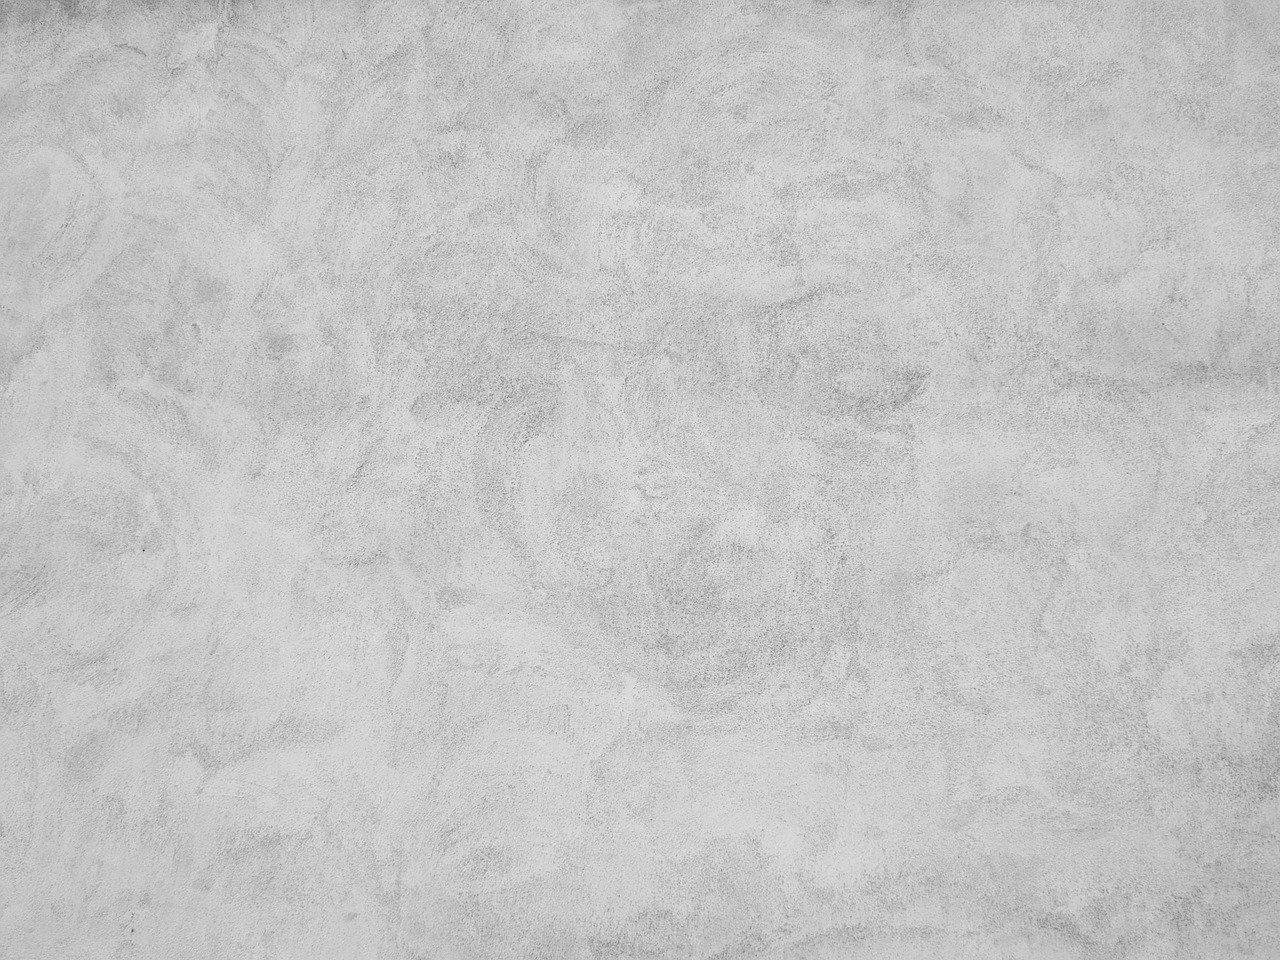 Béton désactivé à Roche-la-Molière 42230 | Tarif béton lavé décoratif